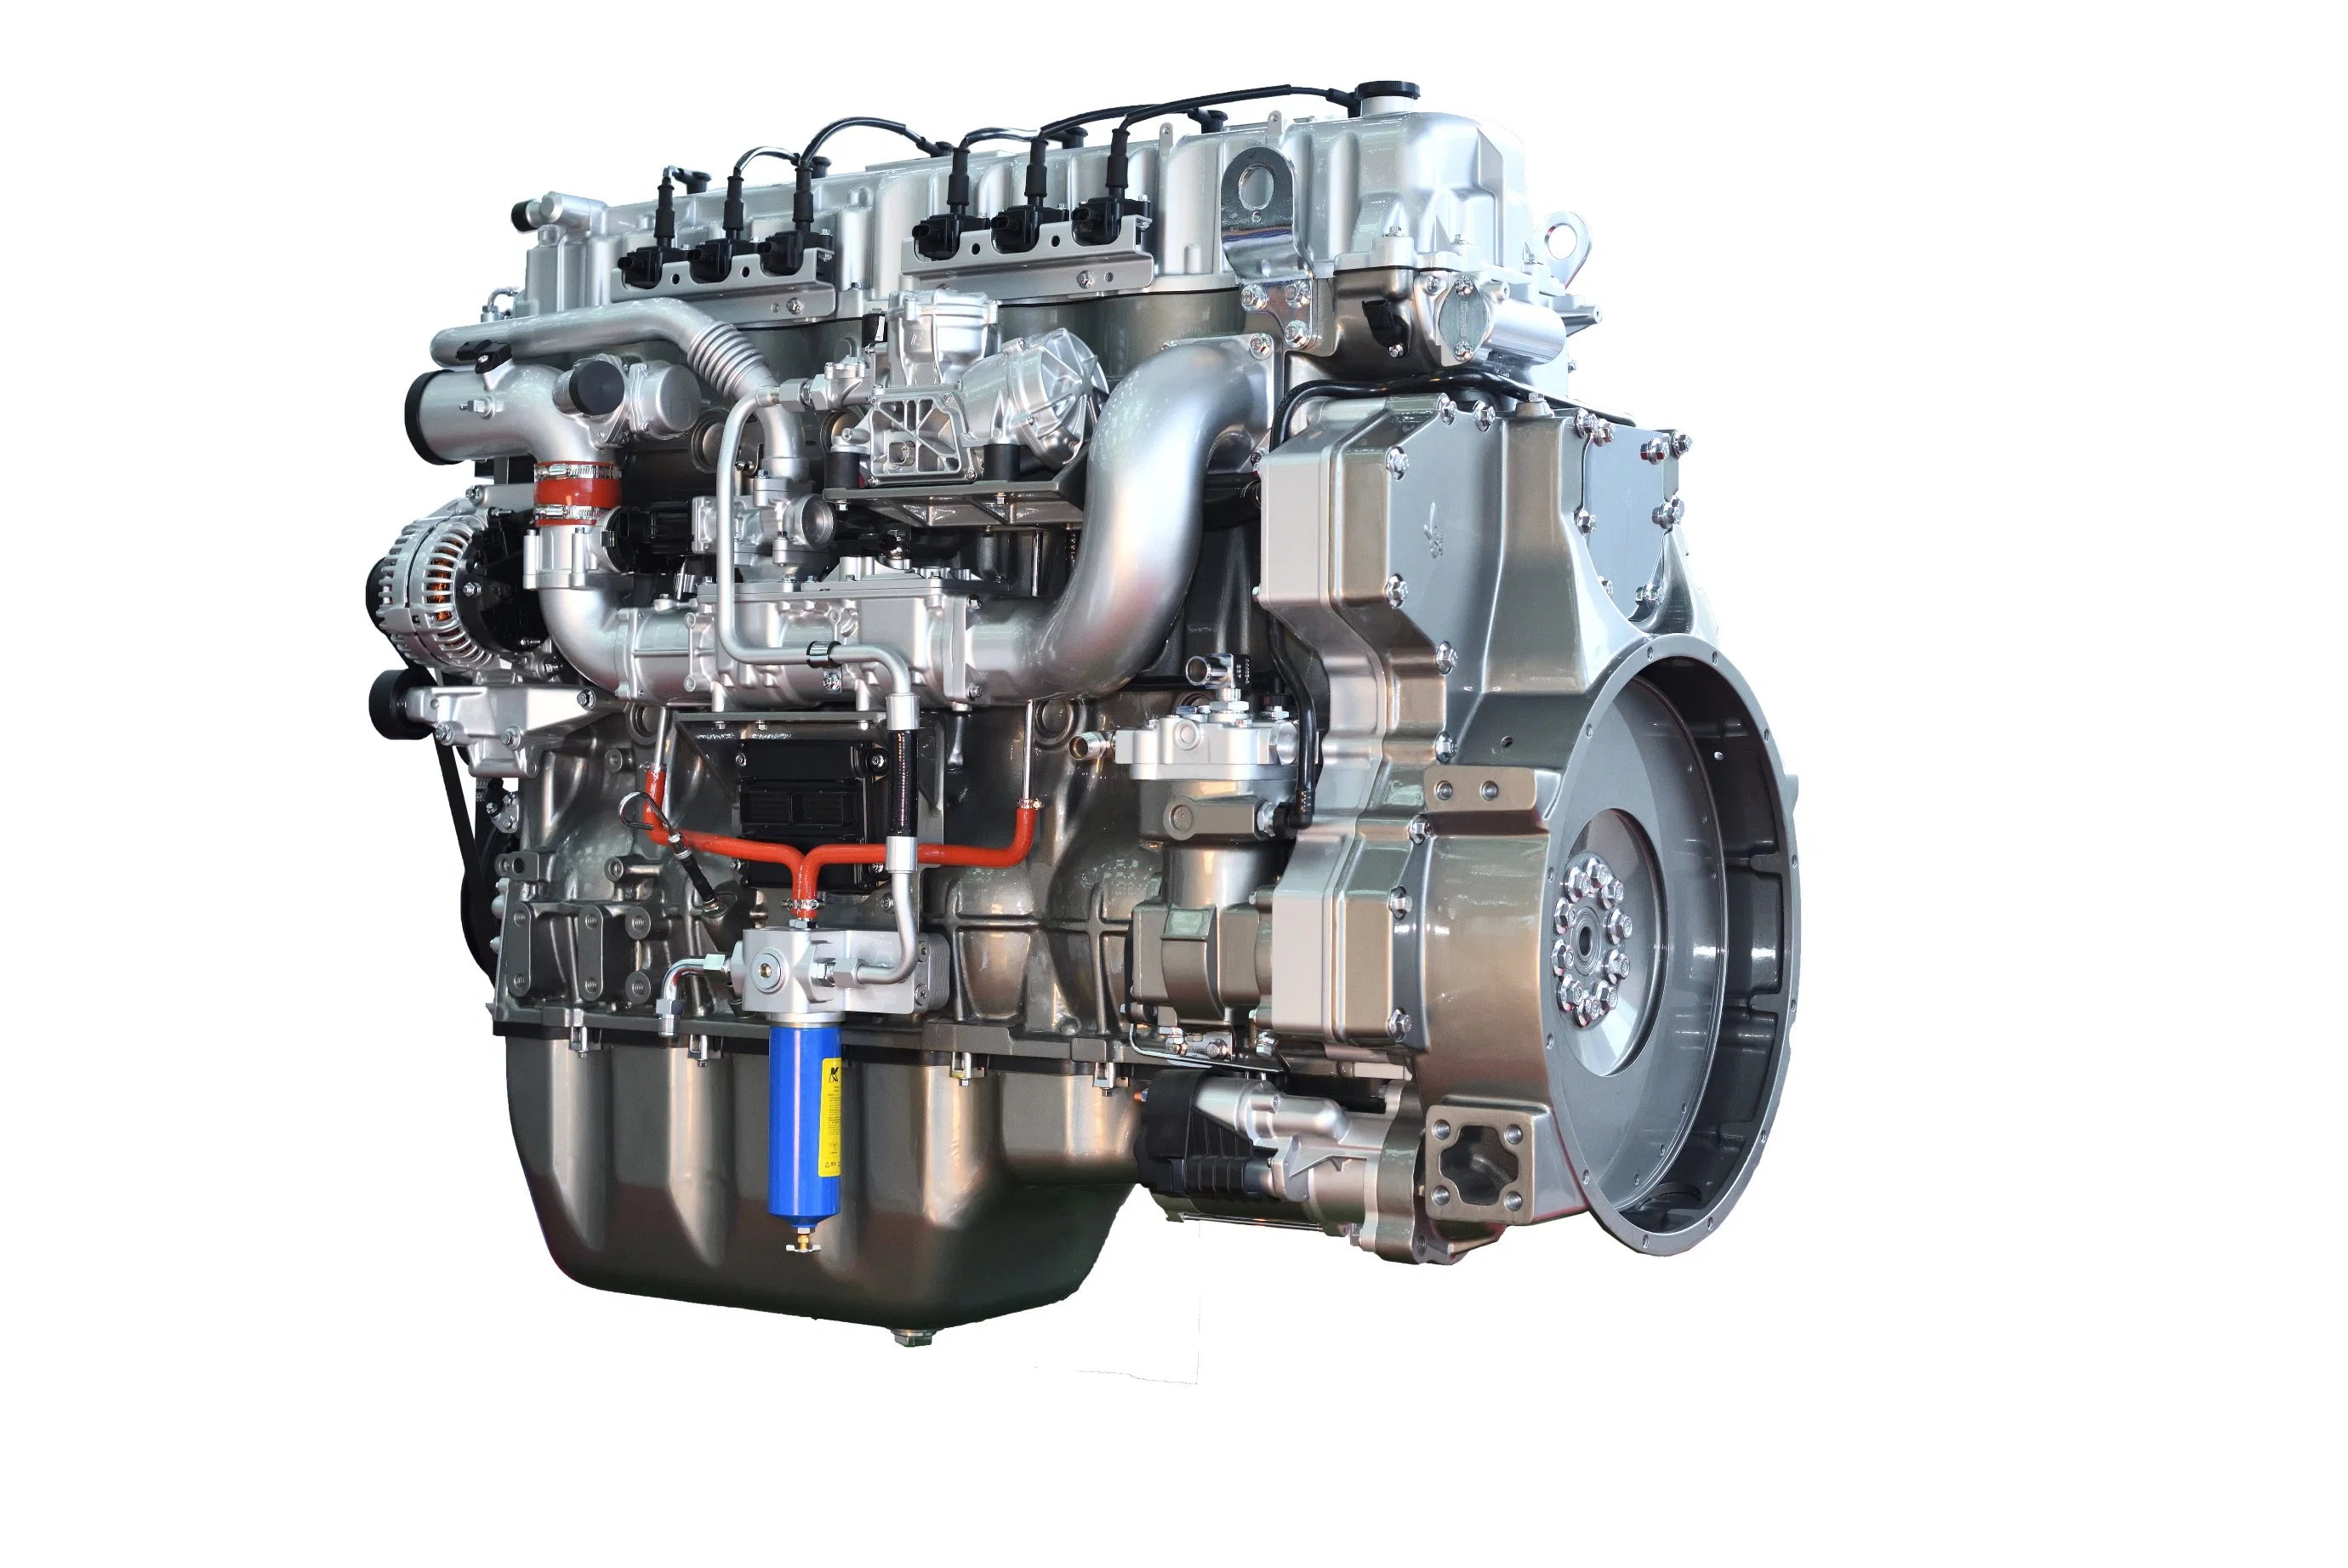 Stabel Yuchai 6K13 Euro 5 Emission Heavy-Duty Dieselmotor mit hoher Leistung, hohe Zuverlässigkeit, niedriger Kraftstoffverbrauch, ausreichende Leistung